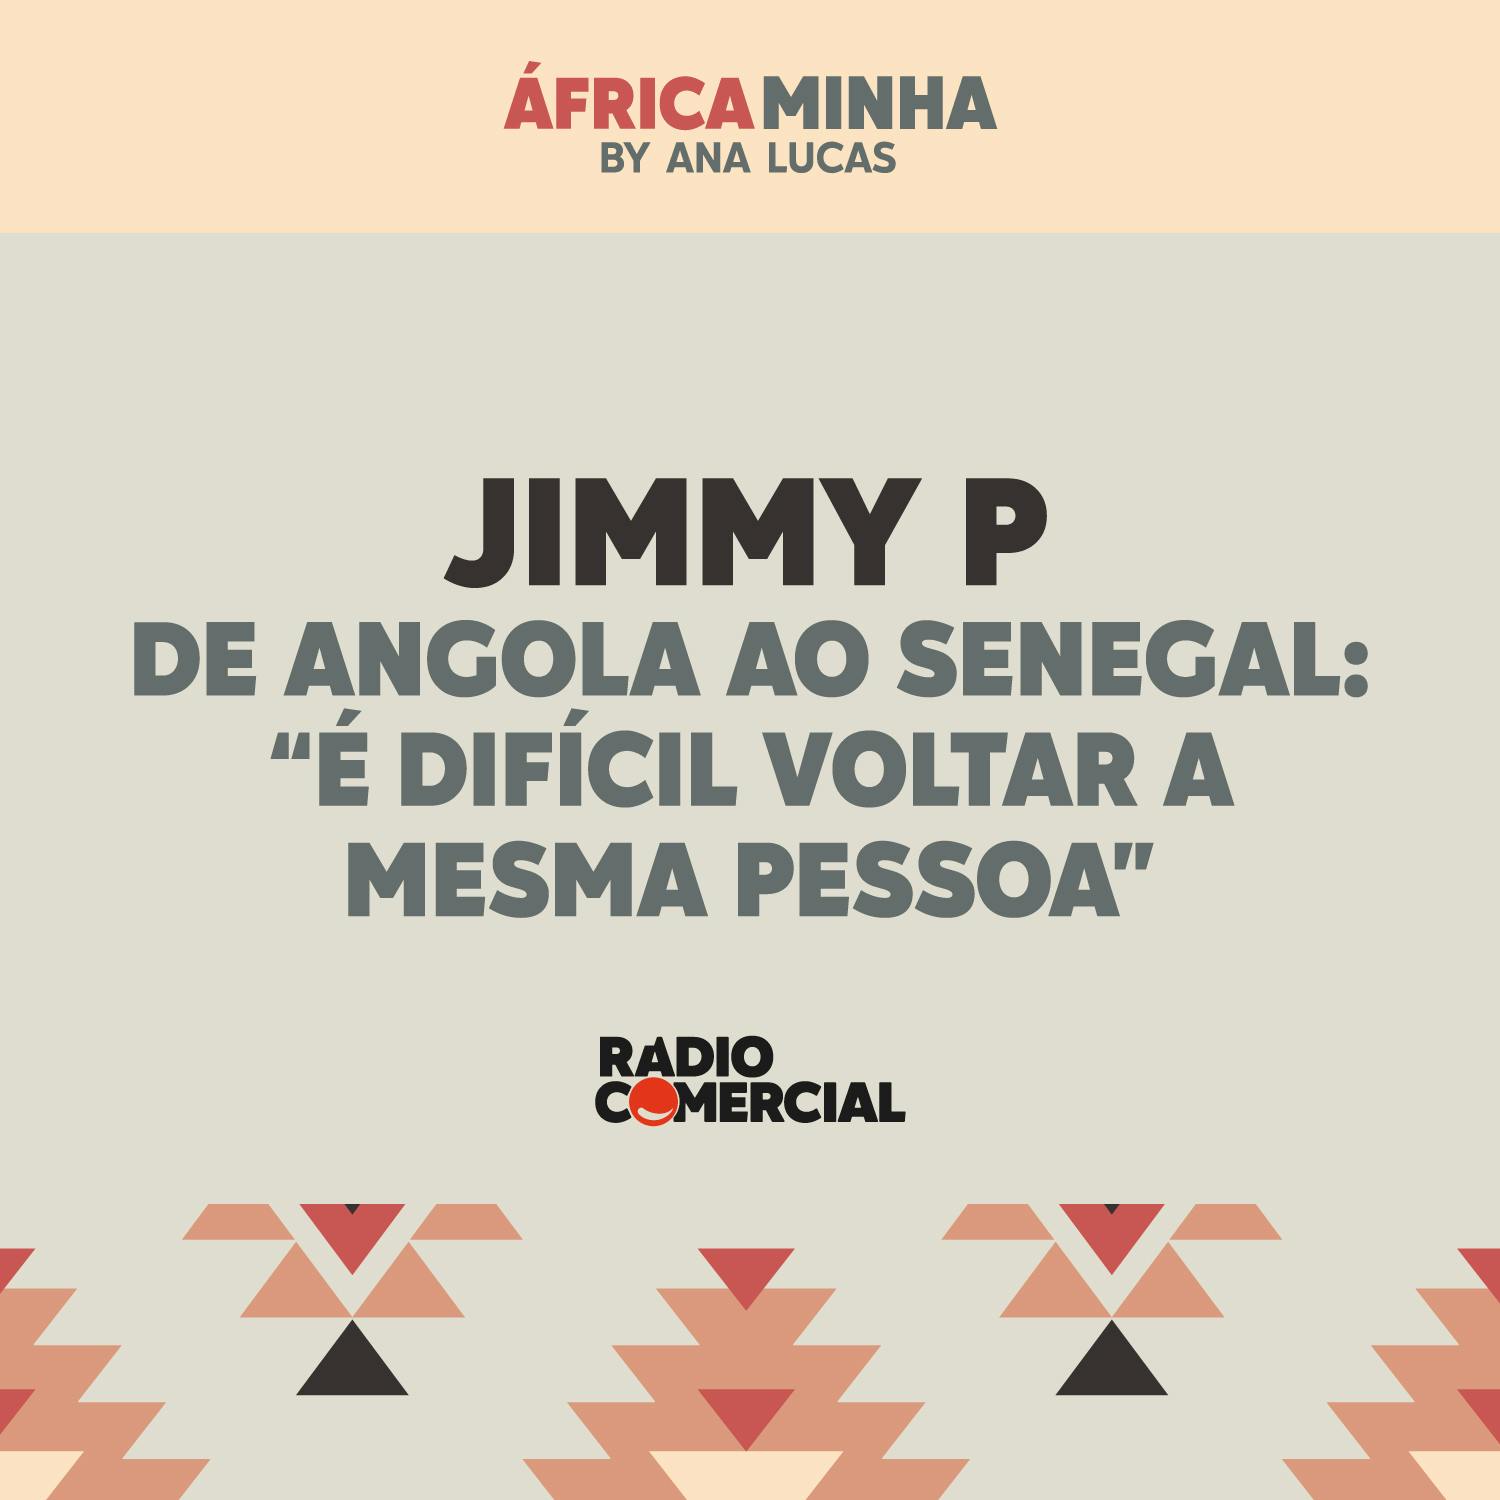 Jimmy P de Angola ao Senegal: "é difícil voltar a mesma pessoa"